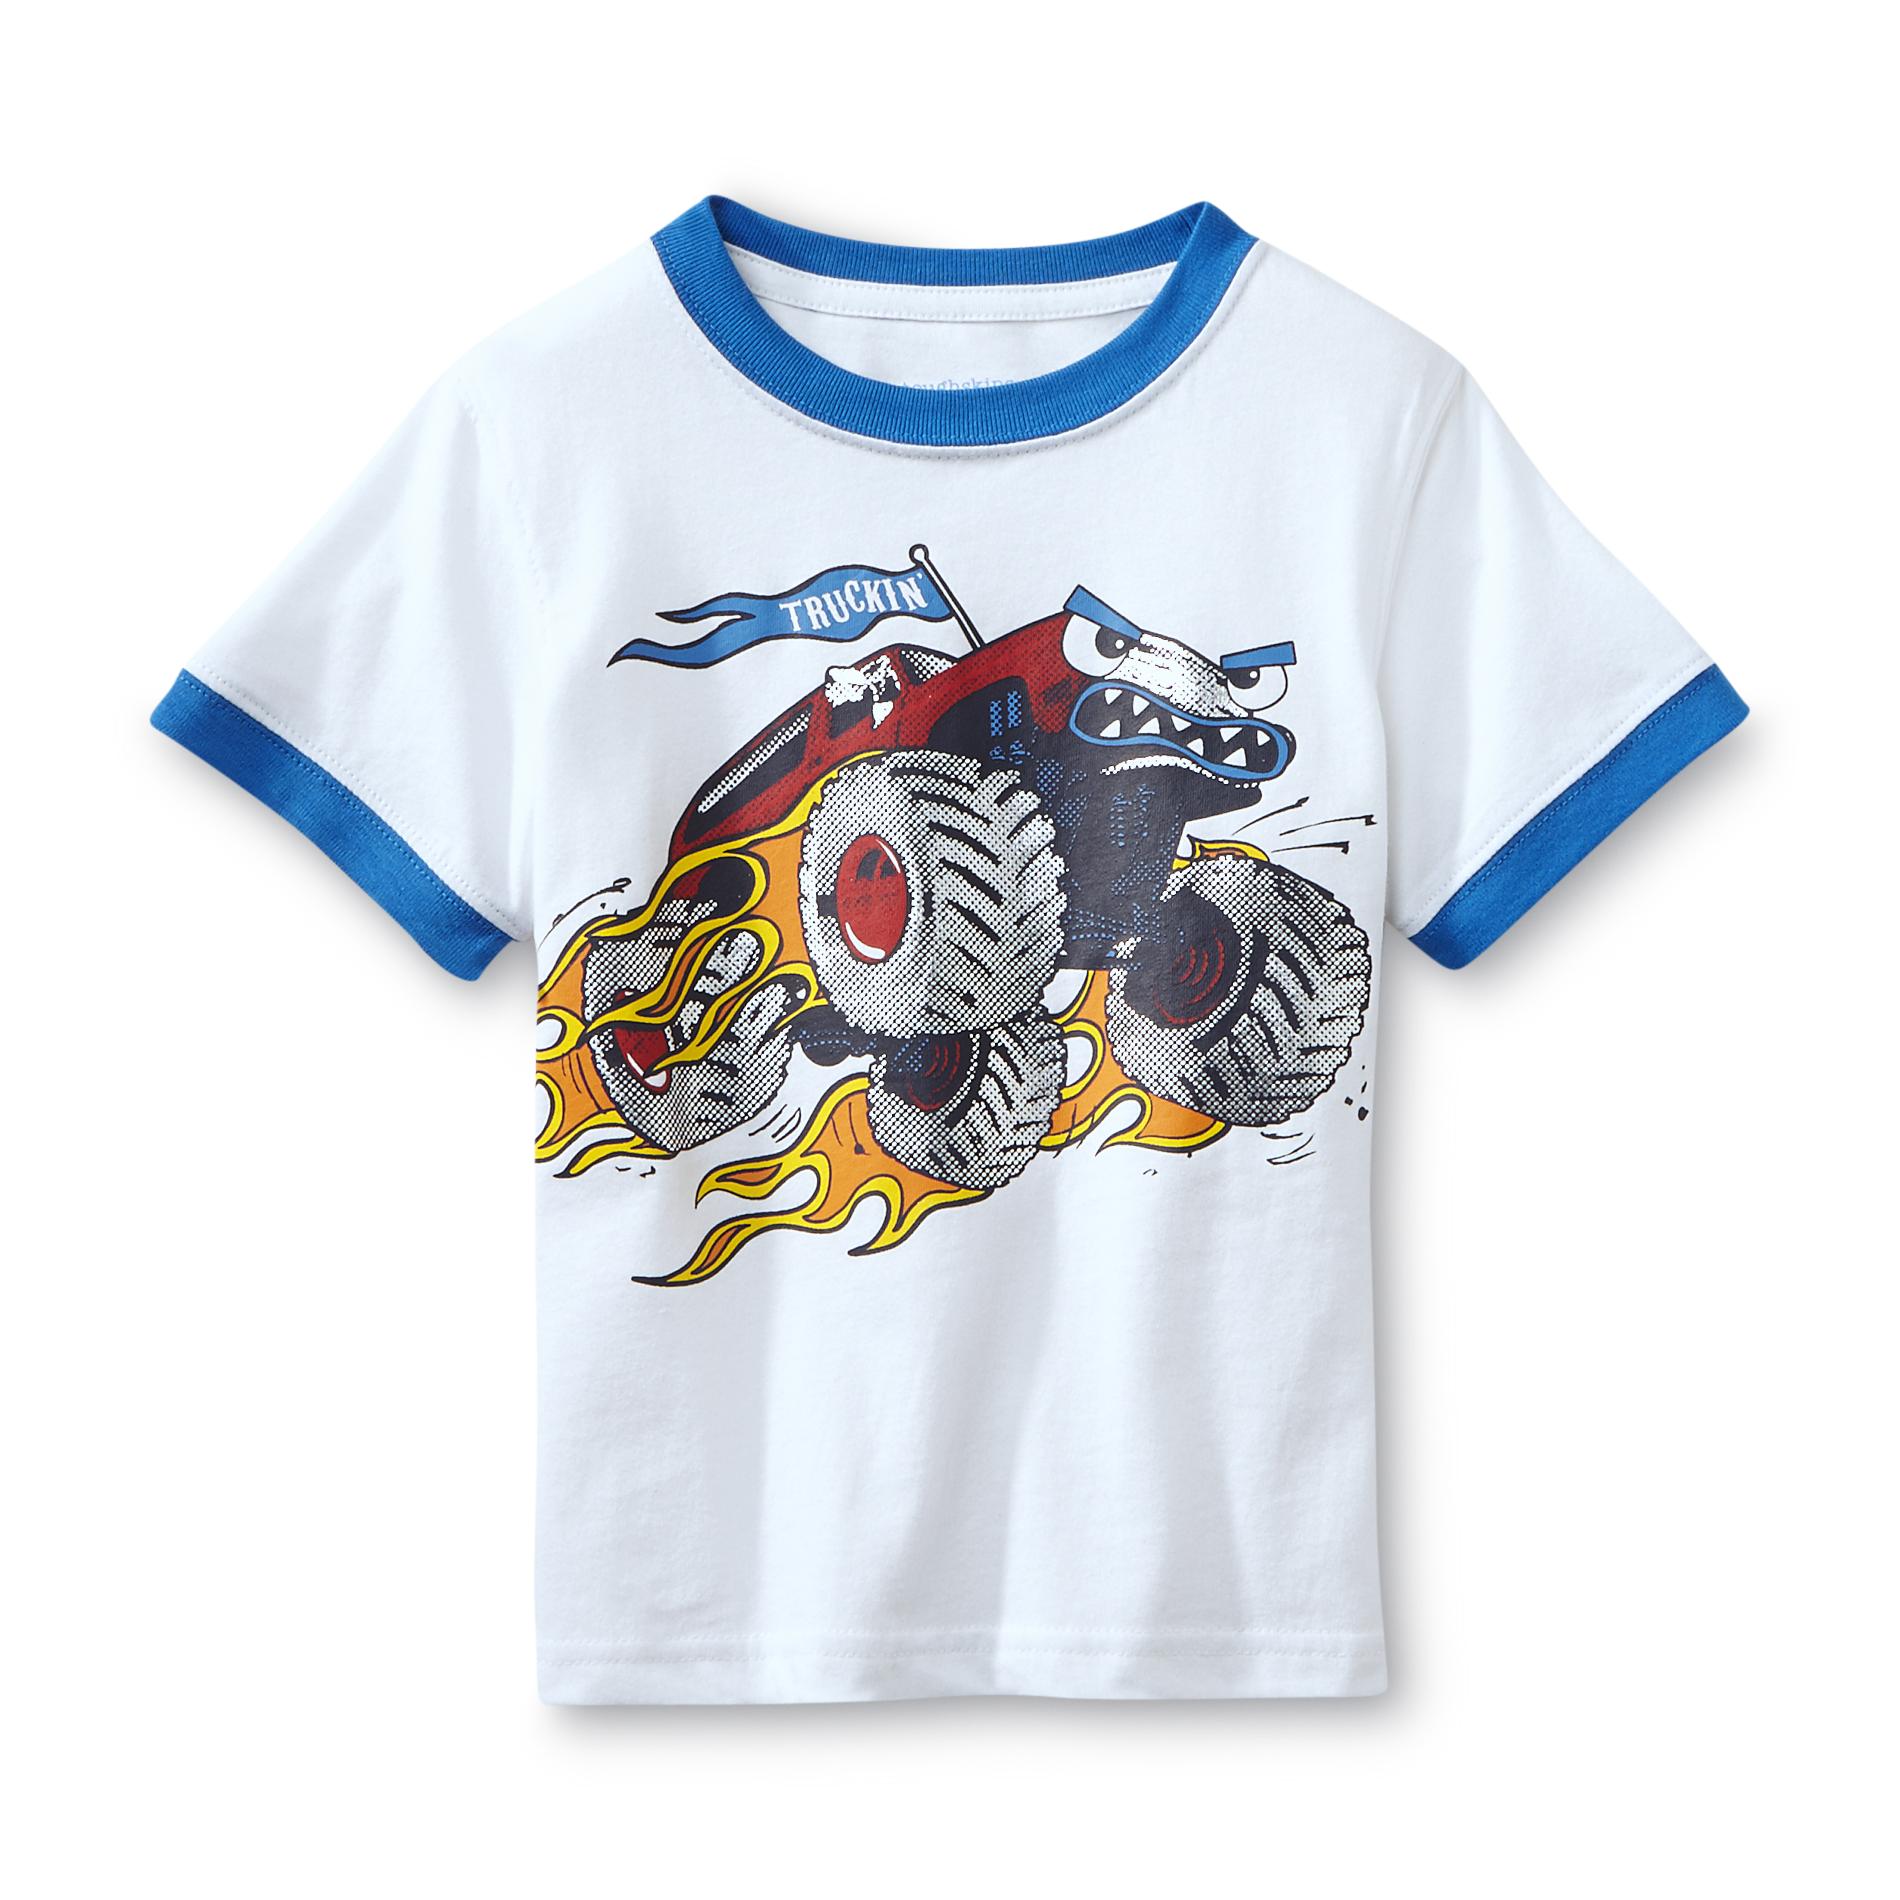 Toughskins Infant & Toddler Boy's T-Shirt - Truckin'